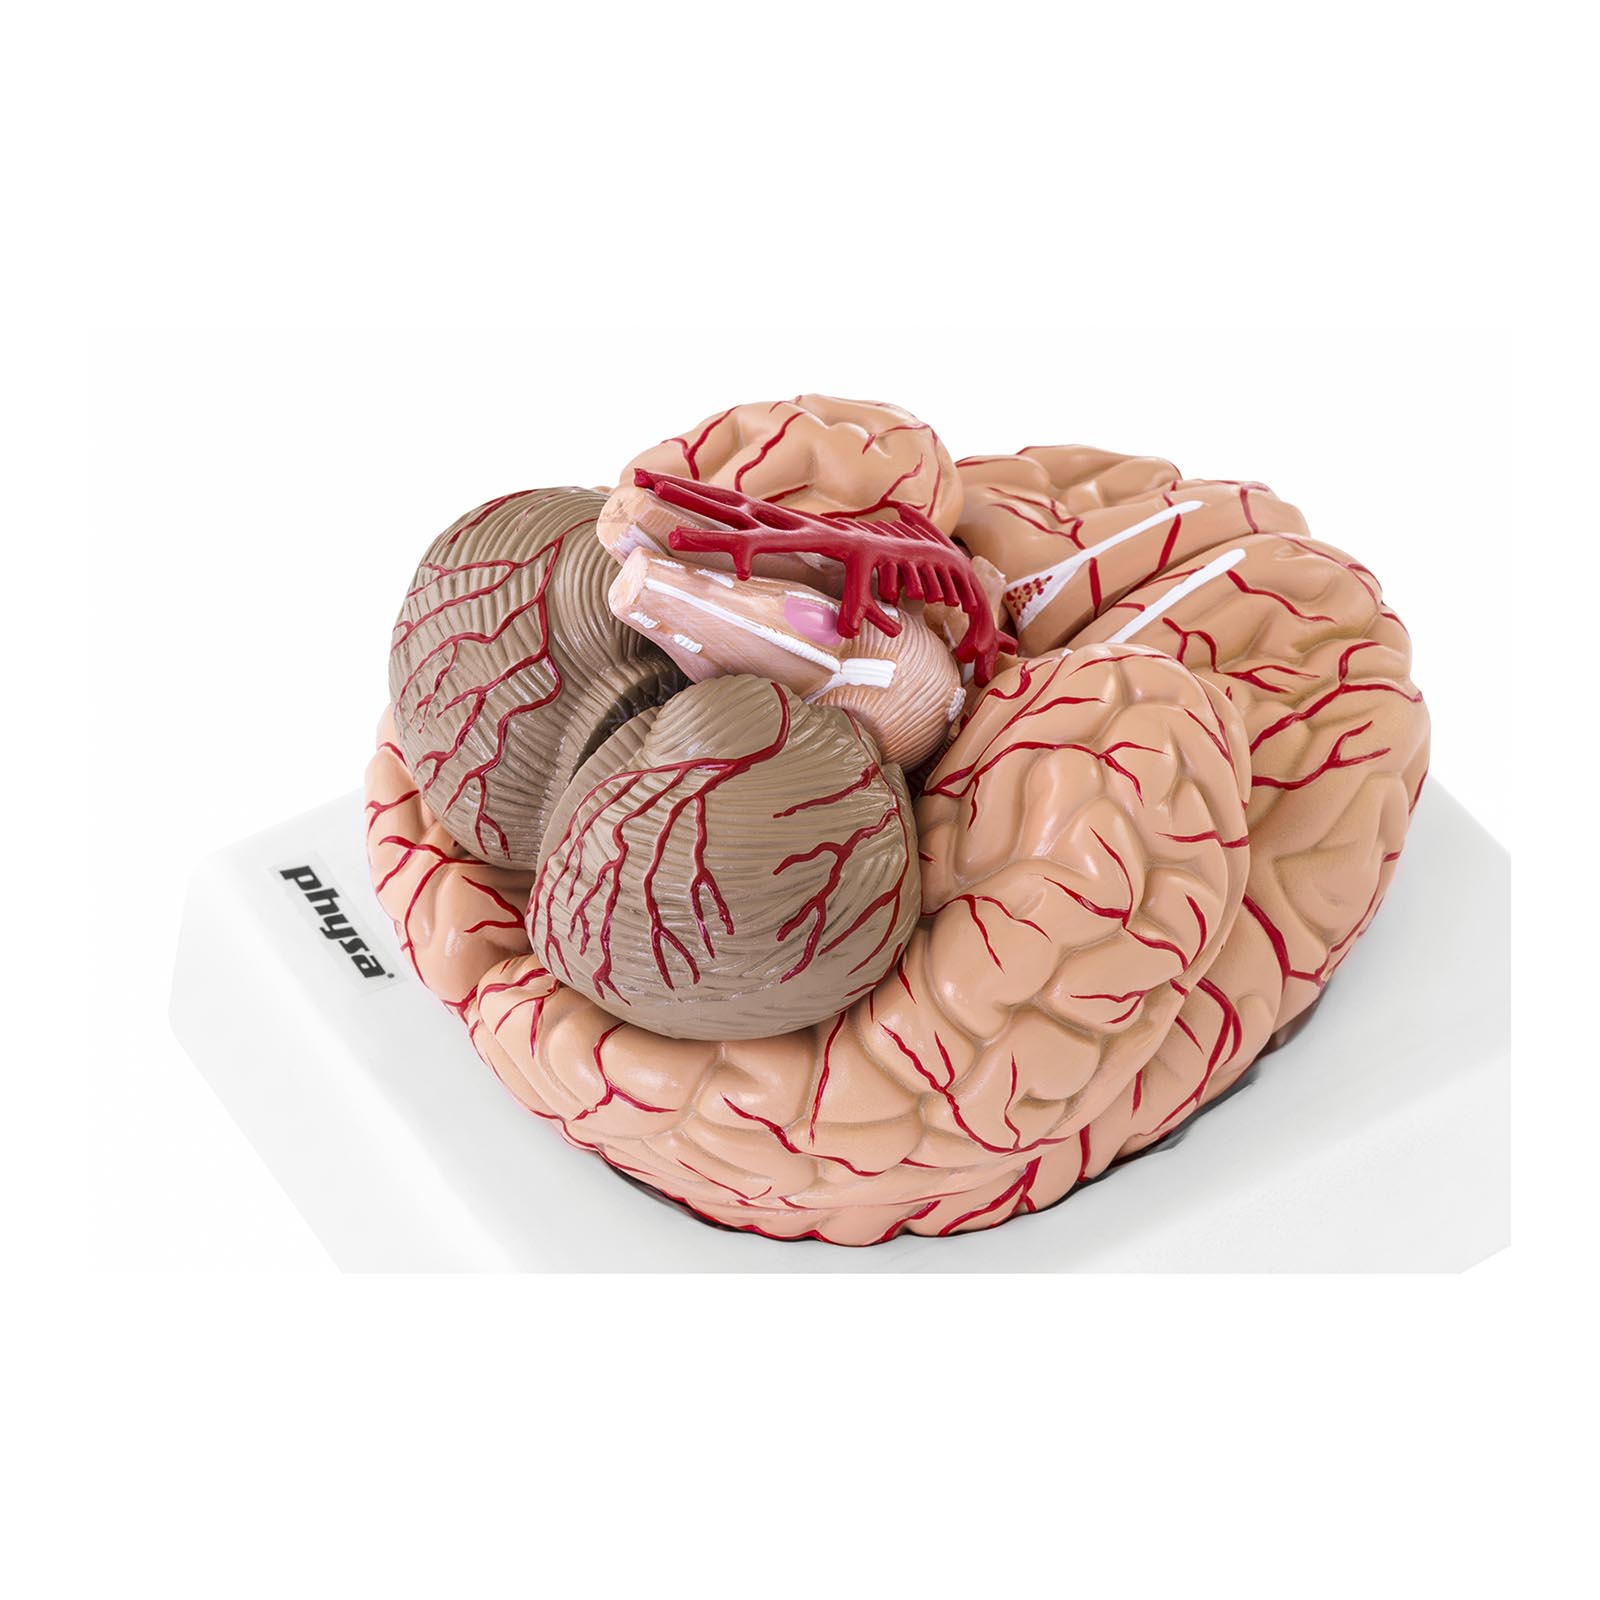 Modelo de cerebro - 9 segmentos - tamaño natural